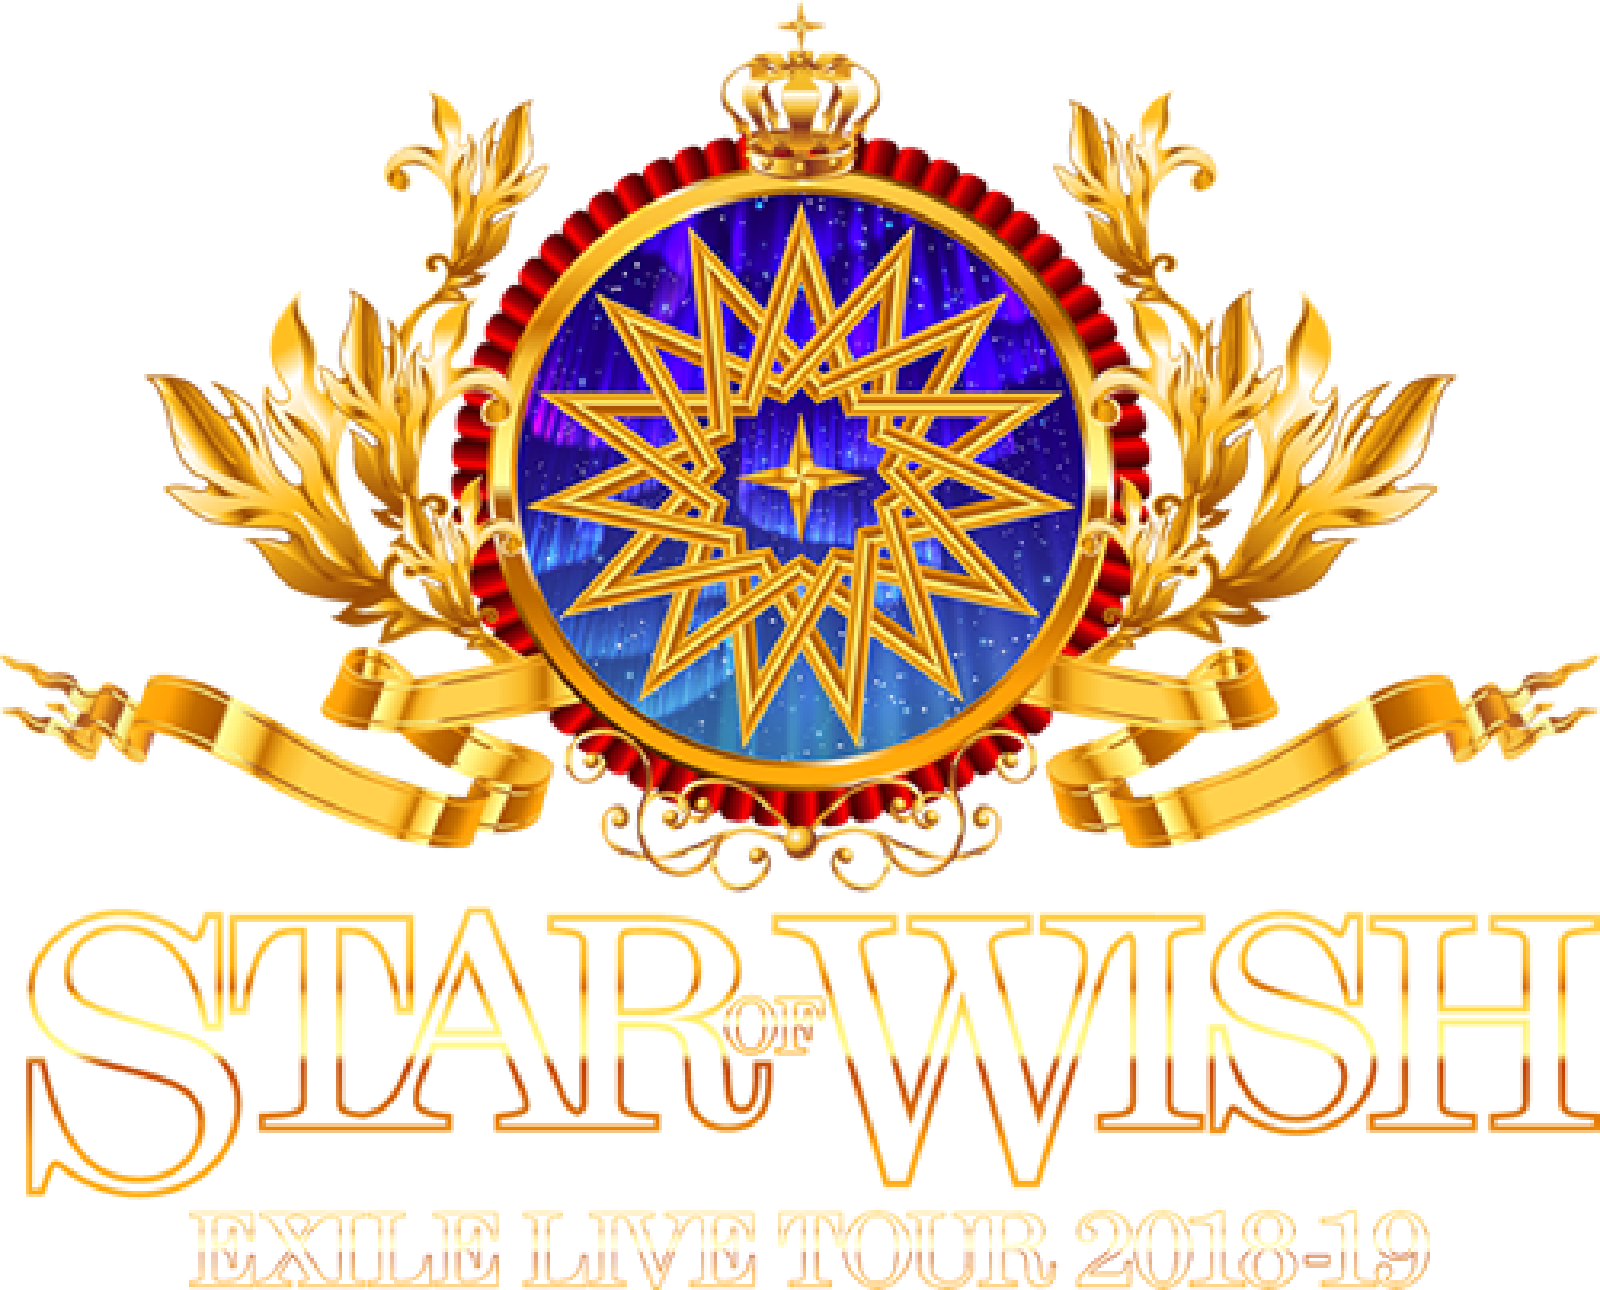 Logodol 全てが高画質 背景透過なアーティストのロゴをお届けするブログ Exileライブツアー Star Of Wish の拡大ロゴ